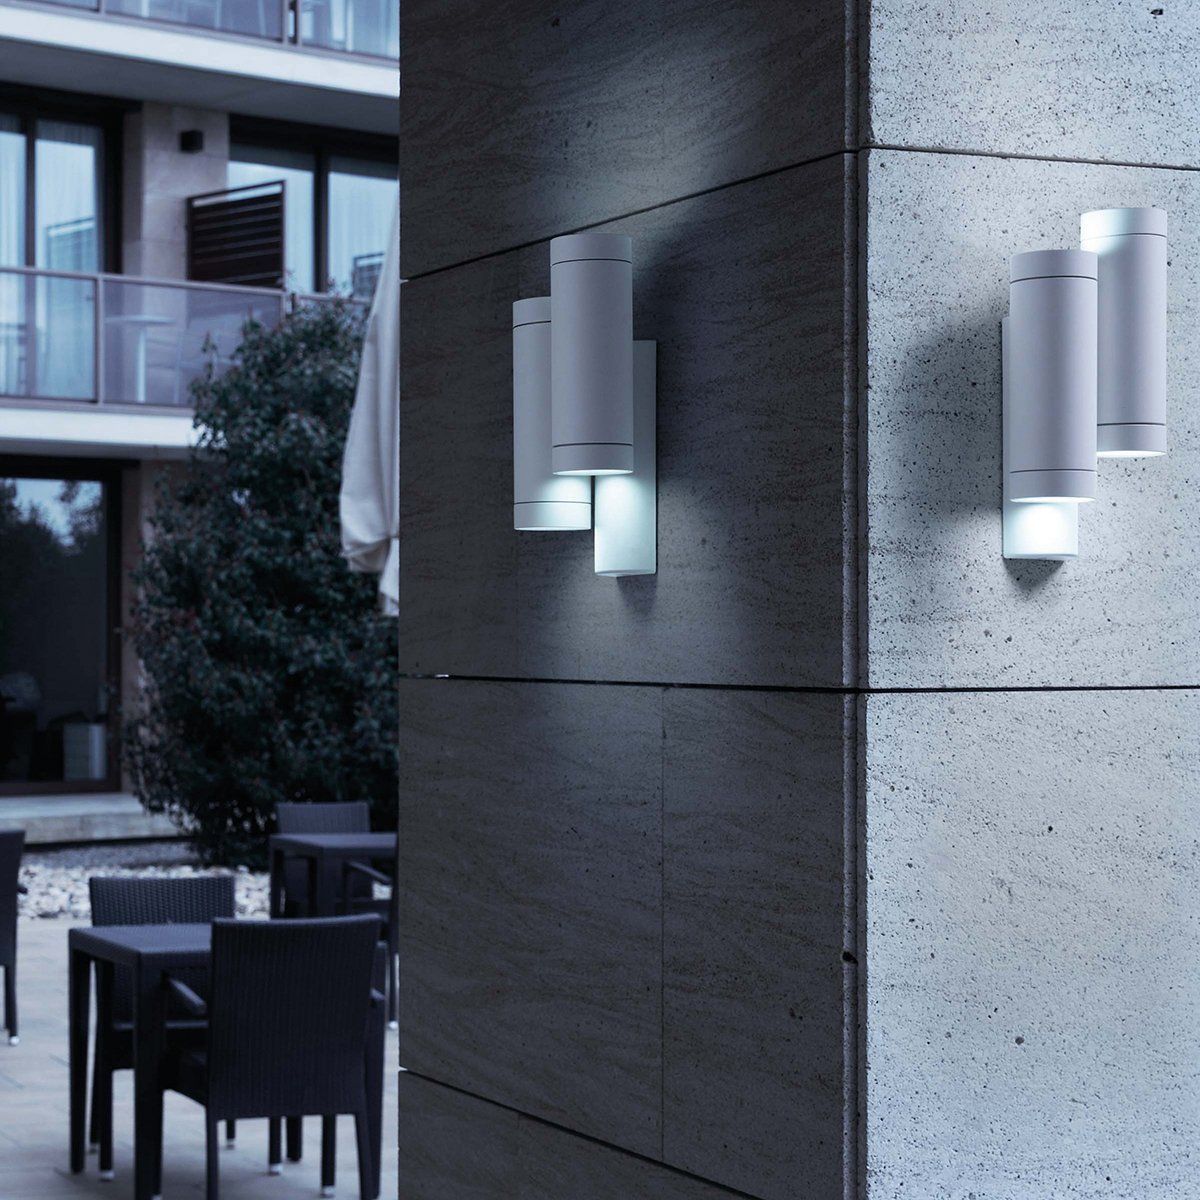 FARO - Applique d'extérieur design 4 lumières STEPS blanche en métal